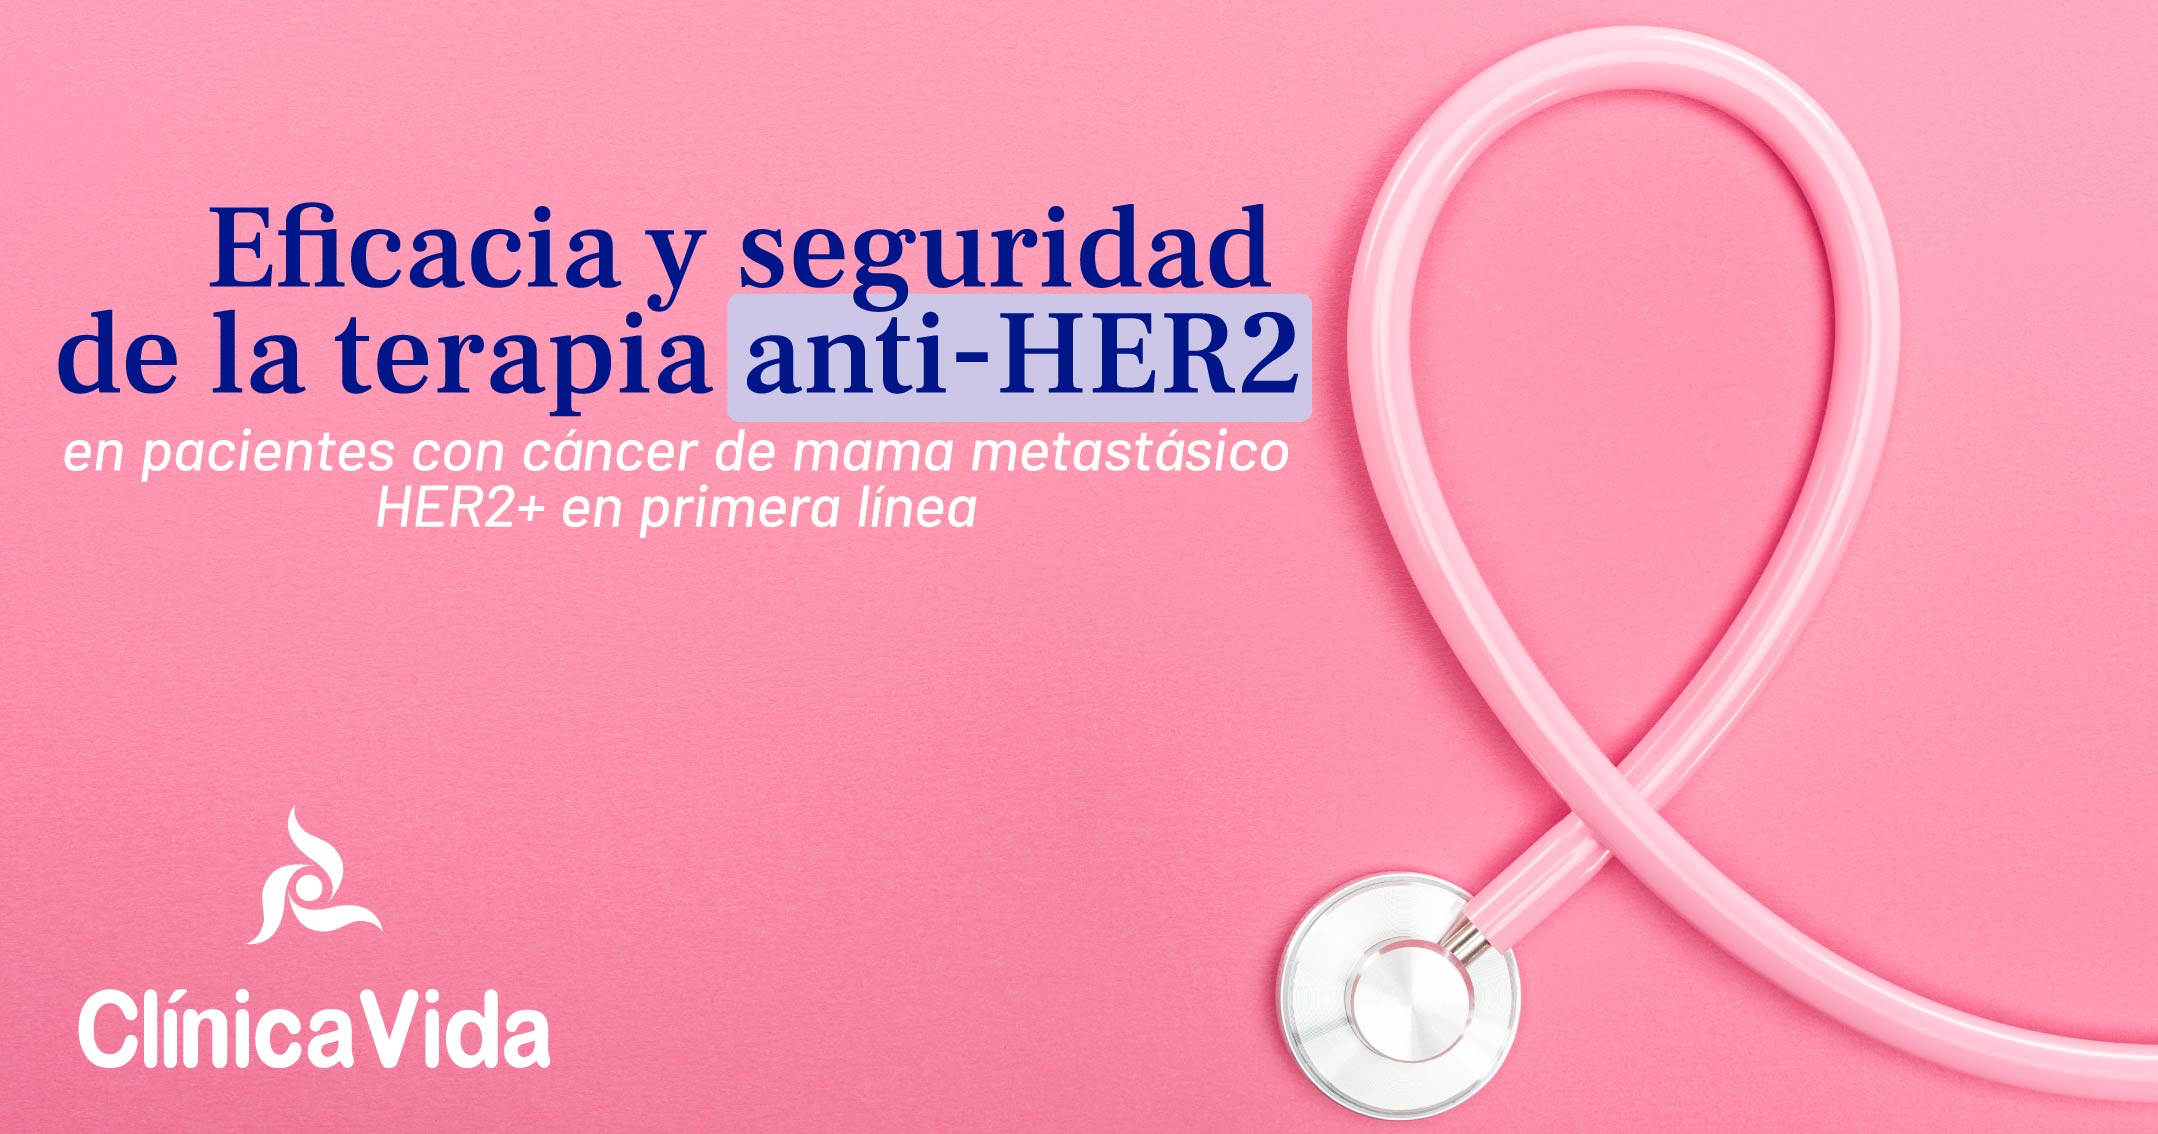 Eficacia y seguridad de la terapia anti-HER2 en pacientes con cáncer de mama metastásico HER2+ en primera línea